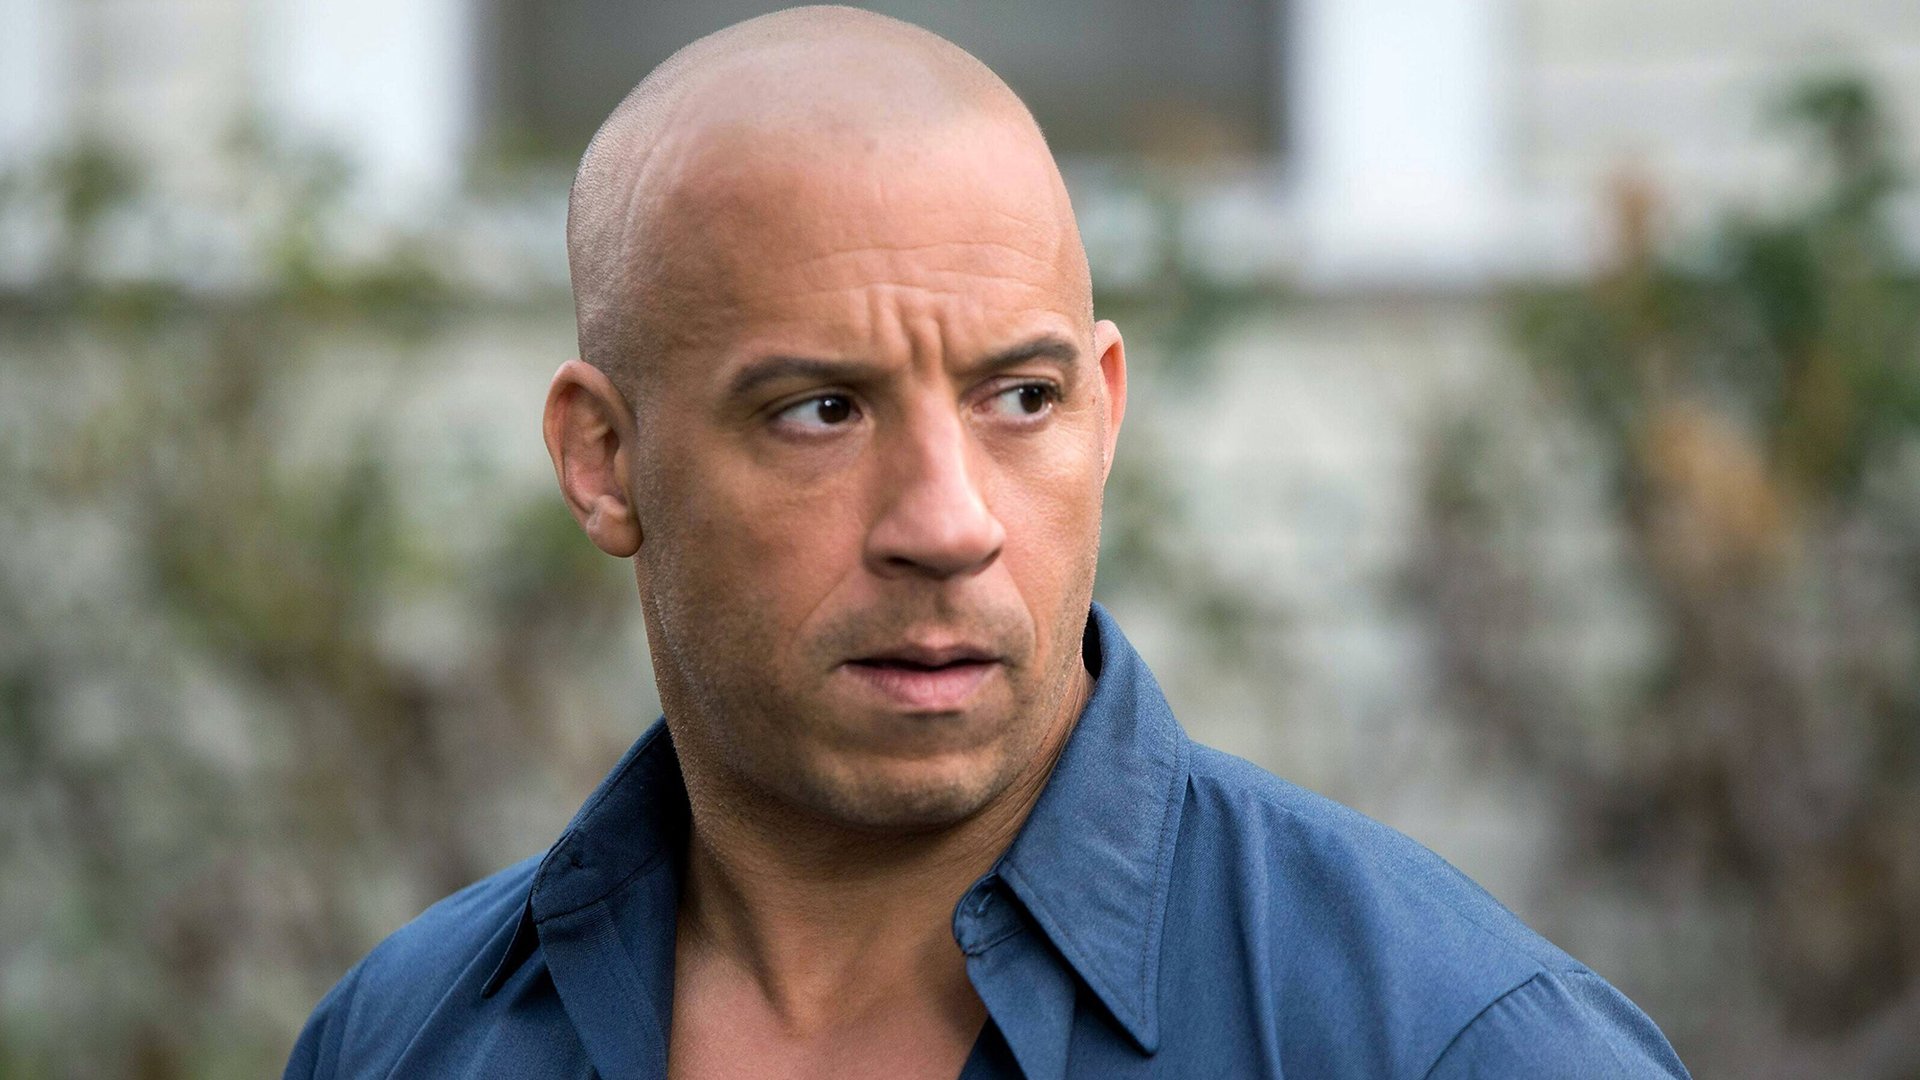 #„Fast & Furious 10“: Vin Diesel teilt ersten Eindruck vom Set – inklusive Jason Momoa oberkörperfrei